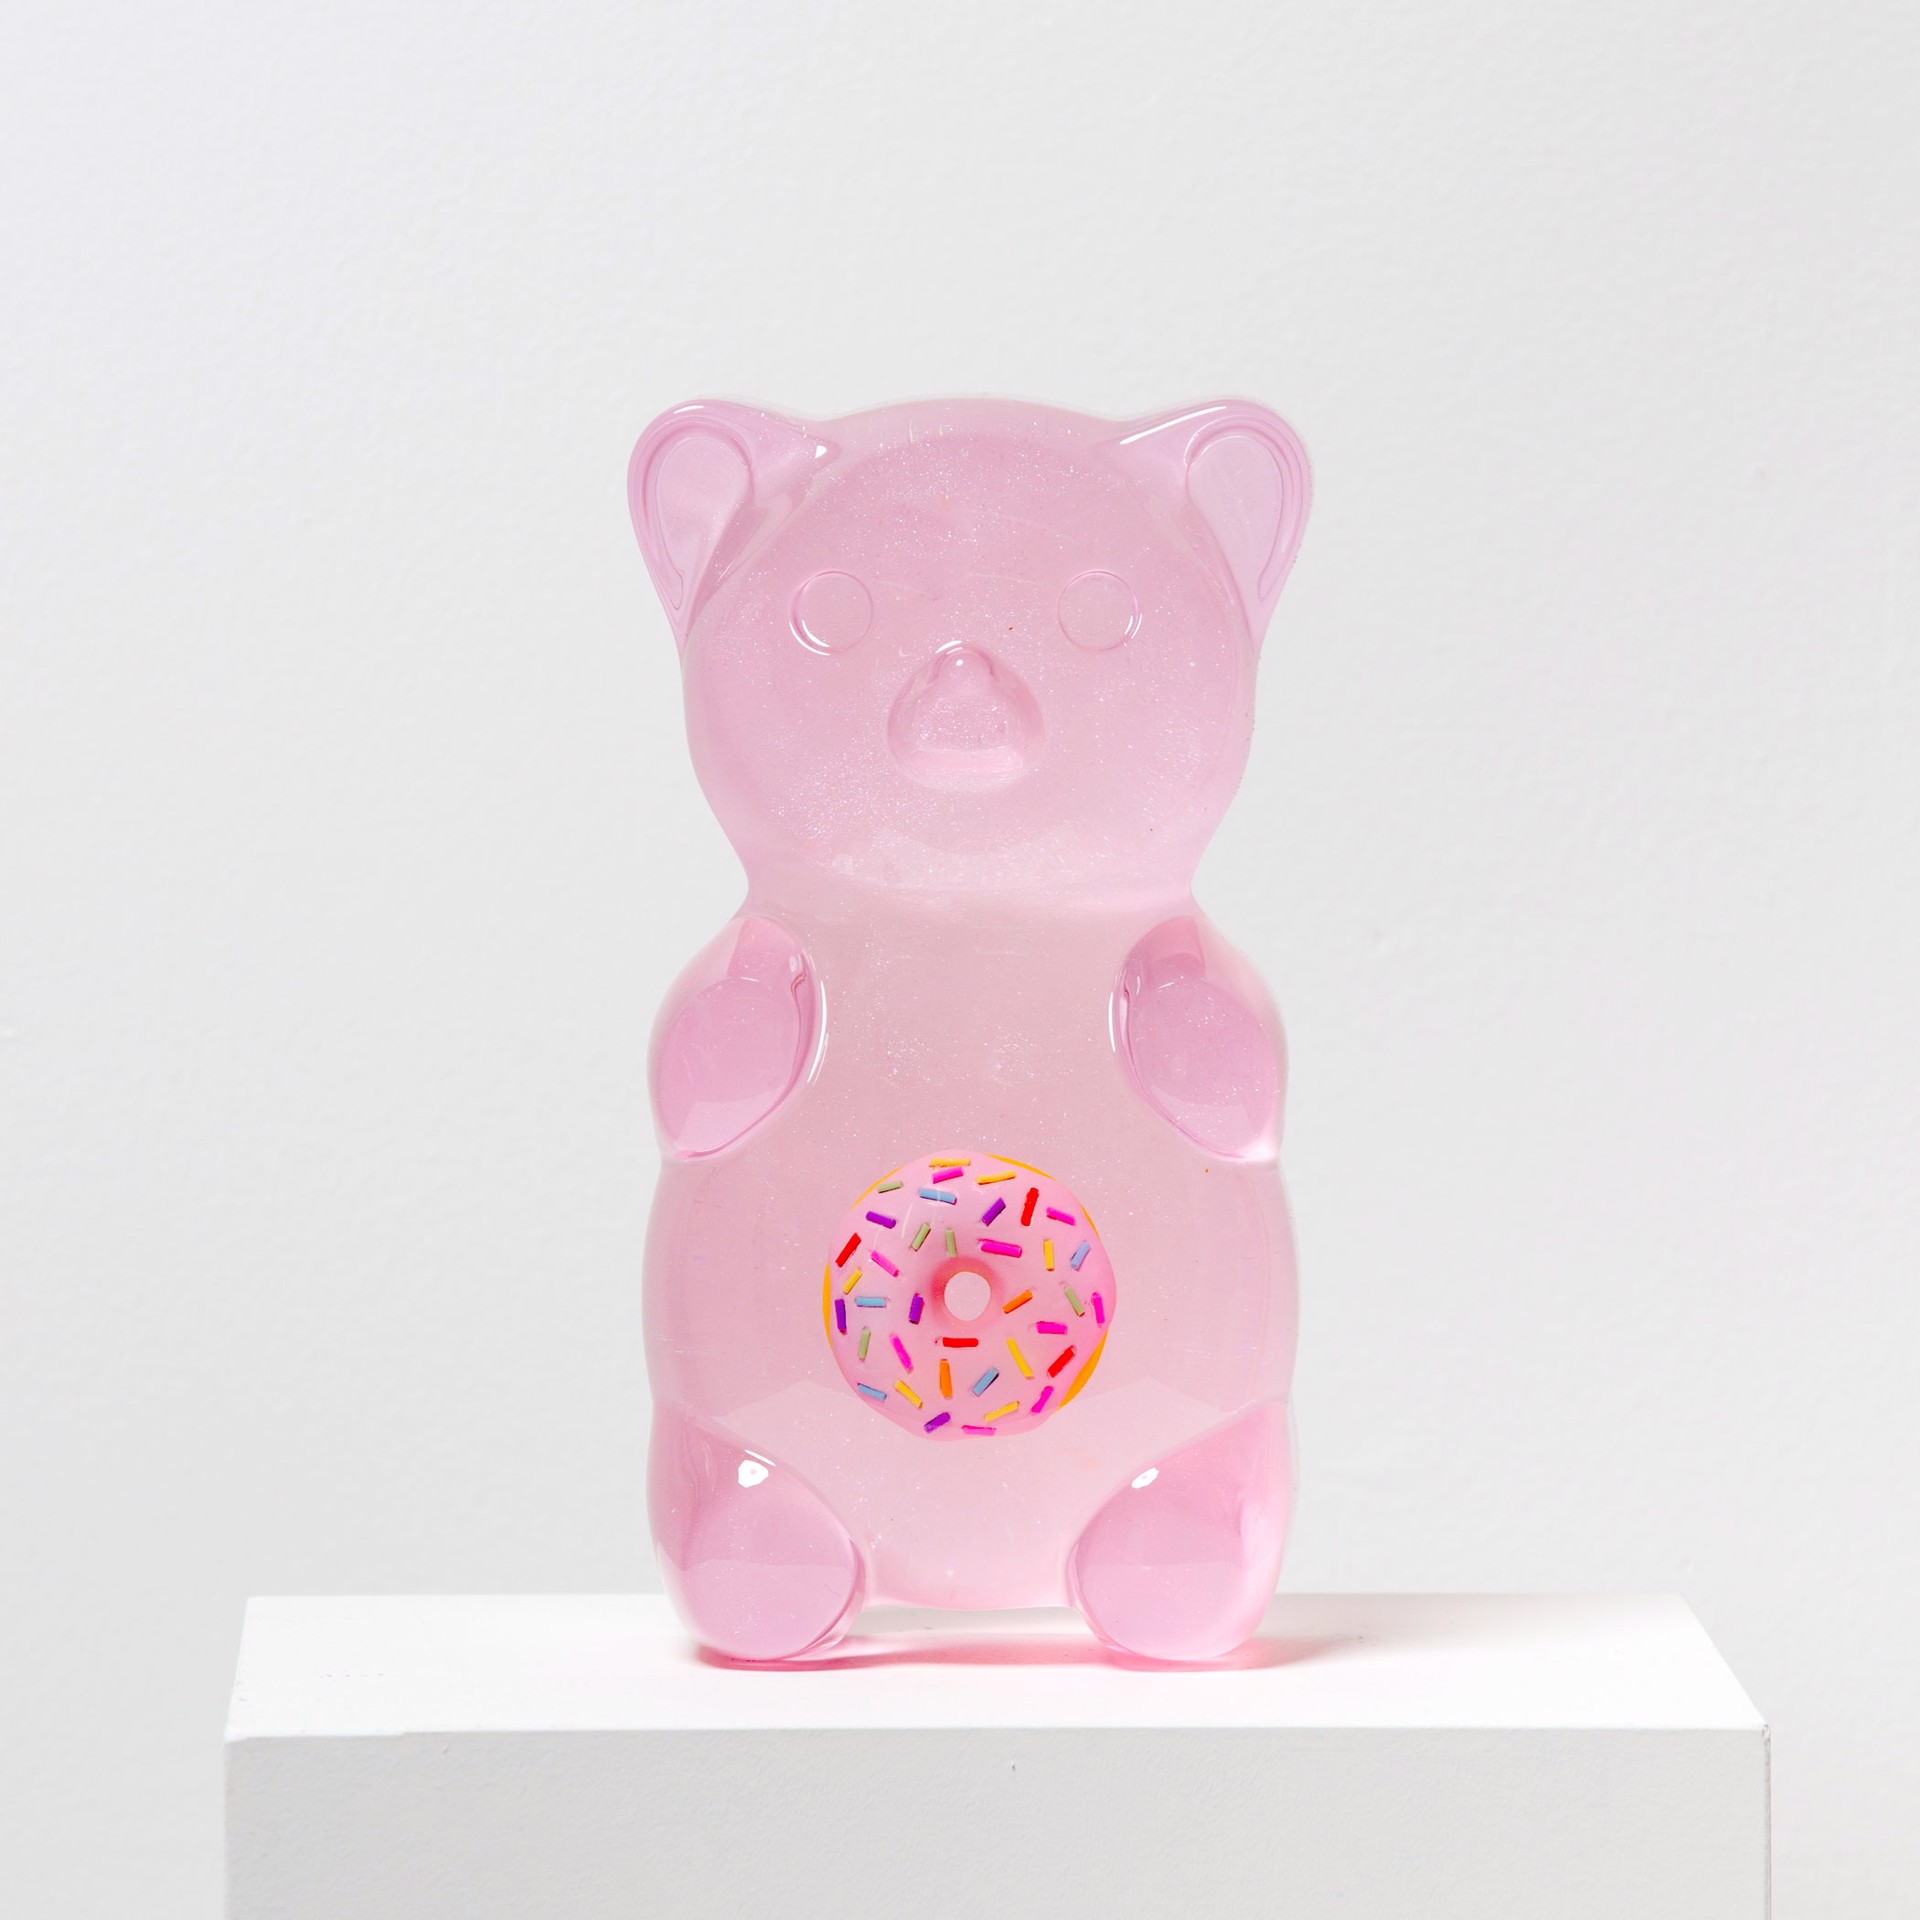 YMQ1 “Yummy Bear Mini” by Anna Sweet